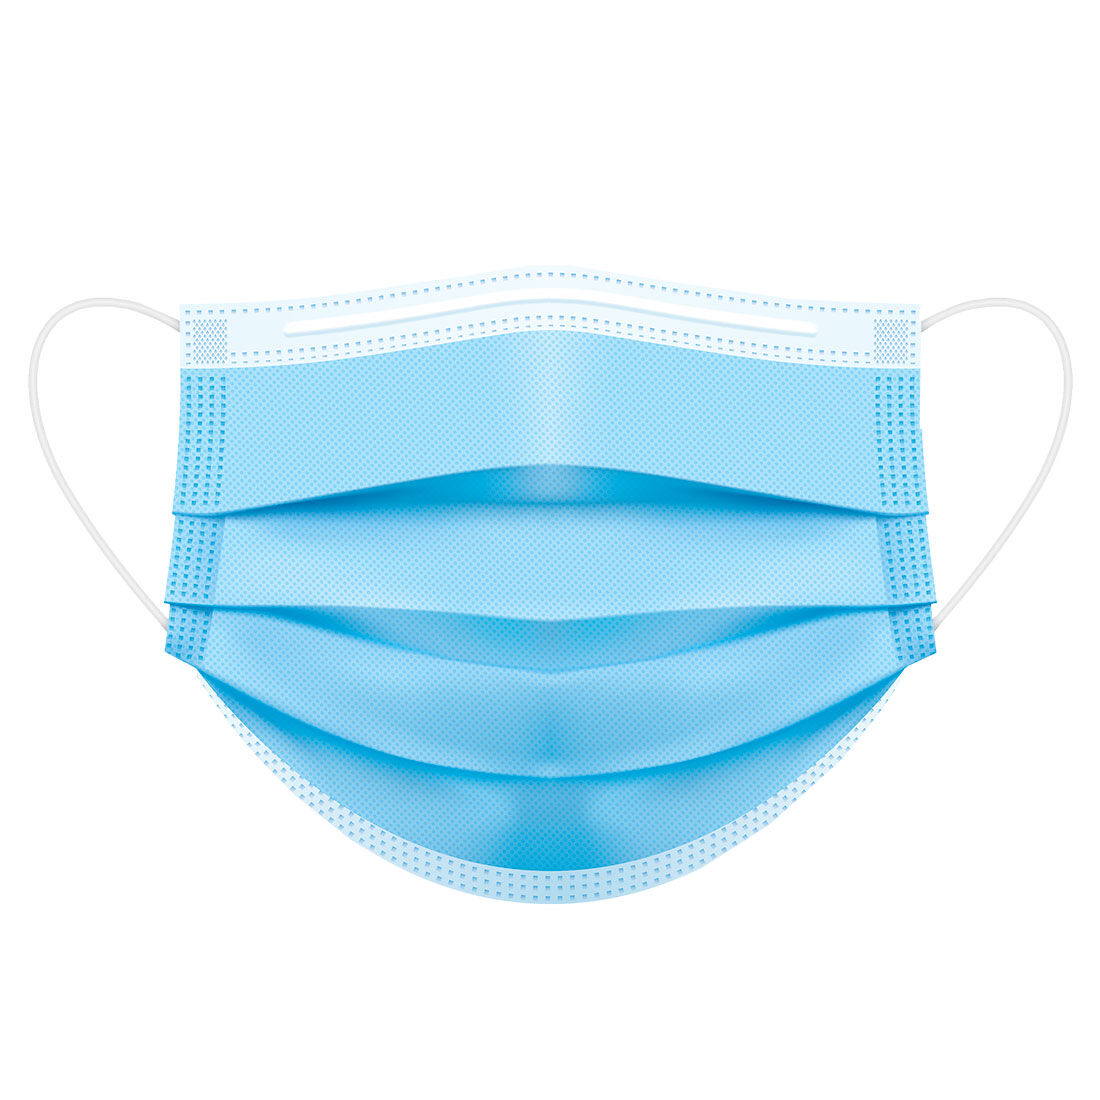 3-lagige medizinische Mund-Nasen-Schutzmaske, TYP IIR (EN14683), blau